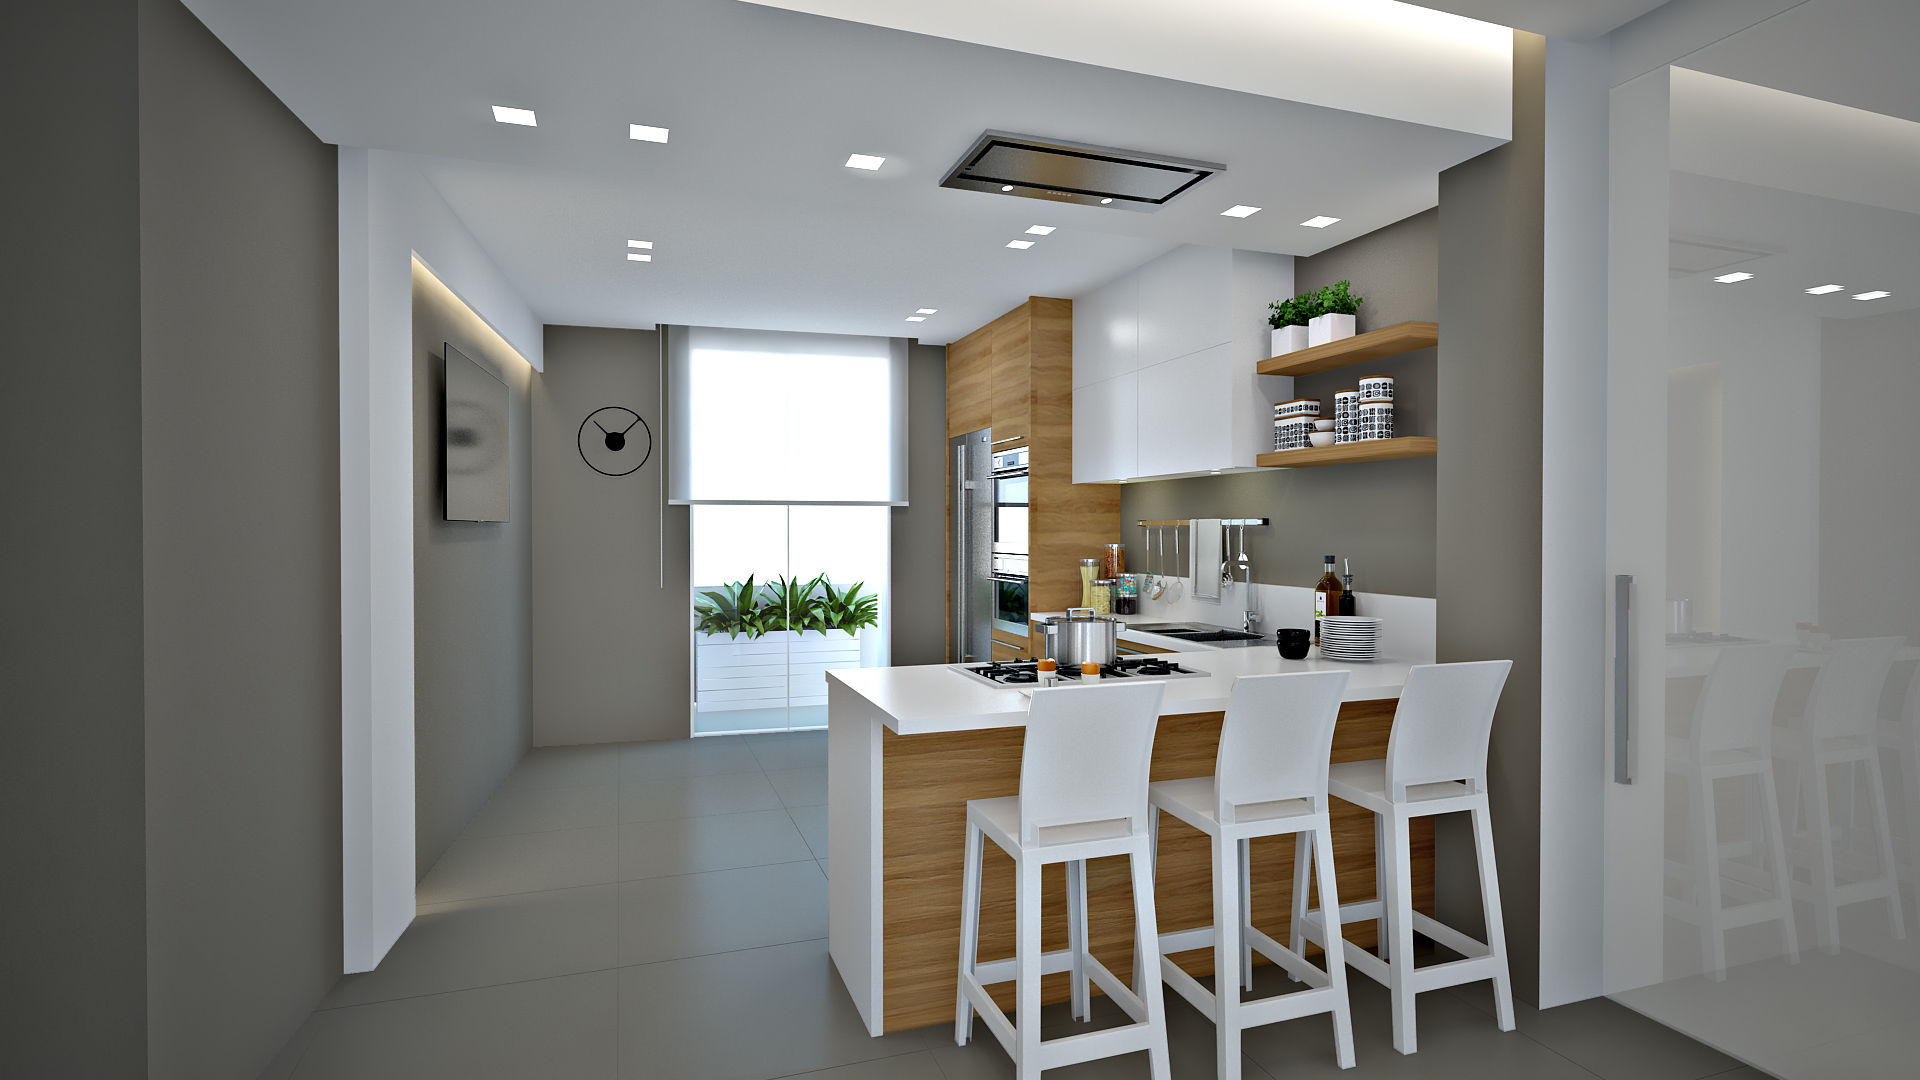 Apartment D, olivia Sciuto olivia Sciuto Cocinas modernas: Ideas, imágenes y decoración